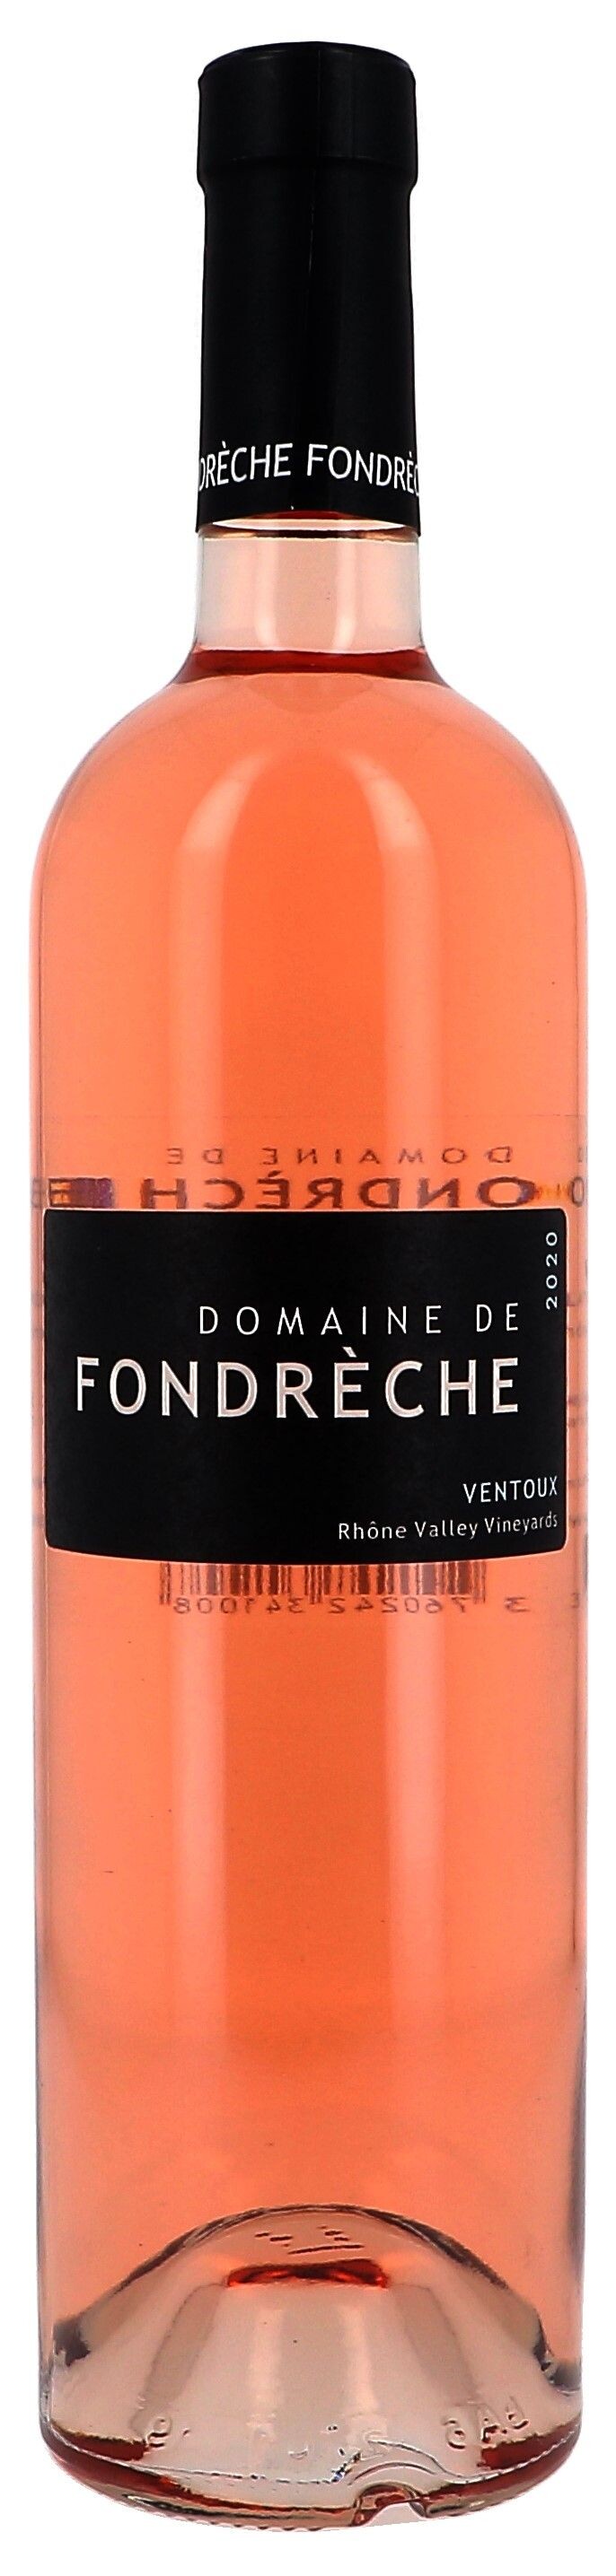 Domaine de Fondreche 75cl Rosé 2020 Ventoux - wine